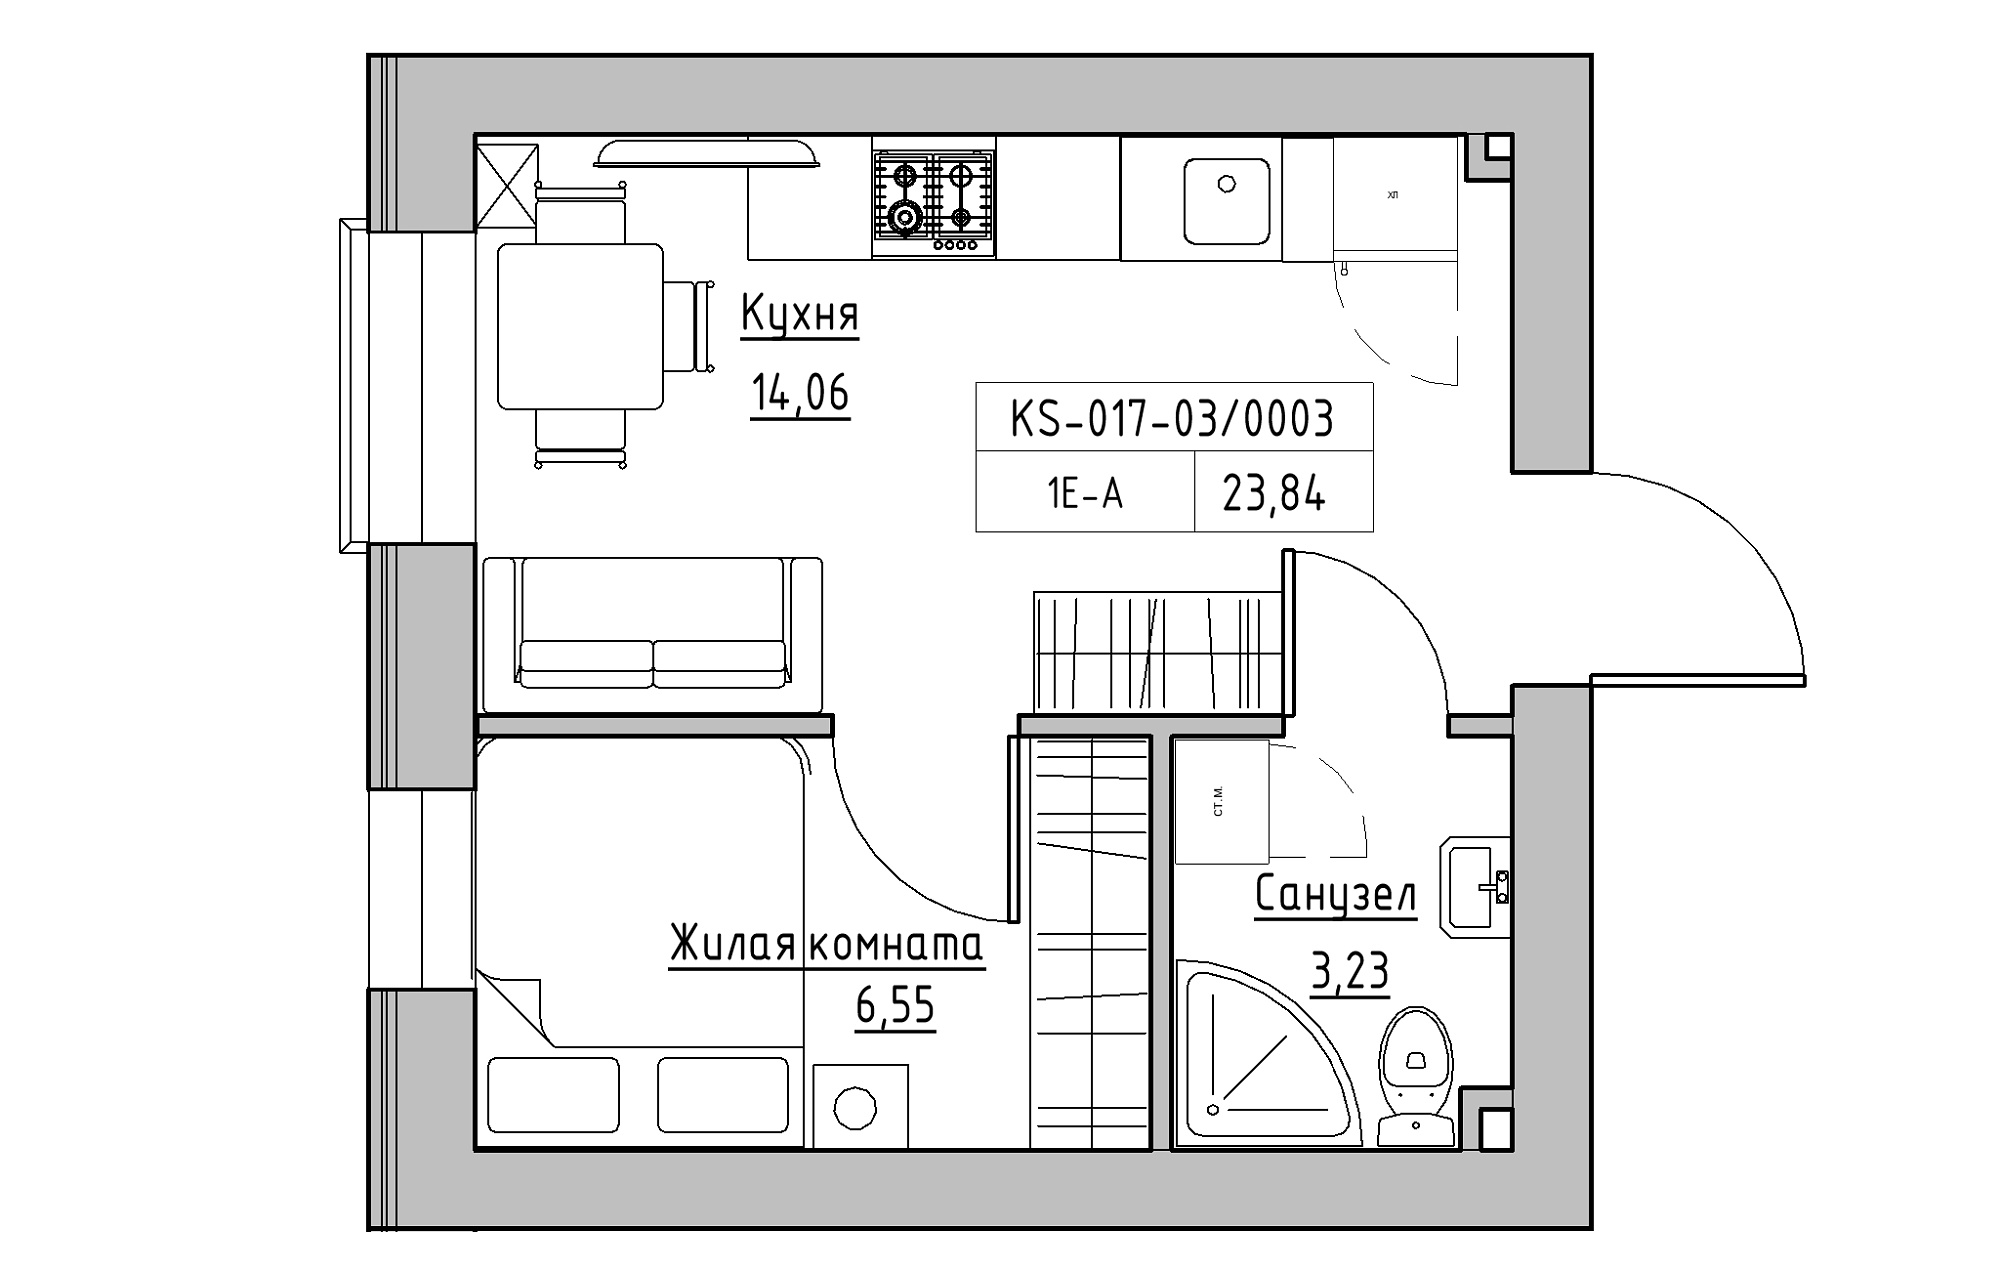 Планування 1-к квартира площею 23.84м2, KS-017-03/0003.